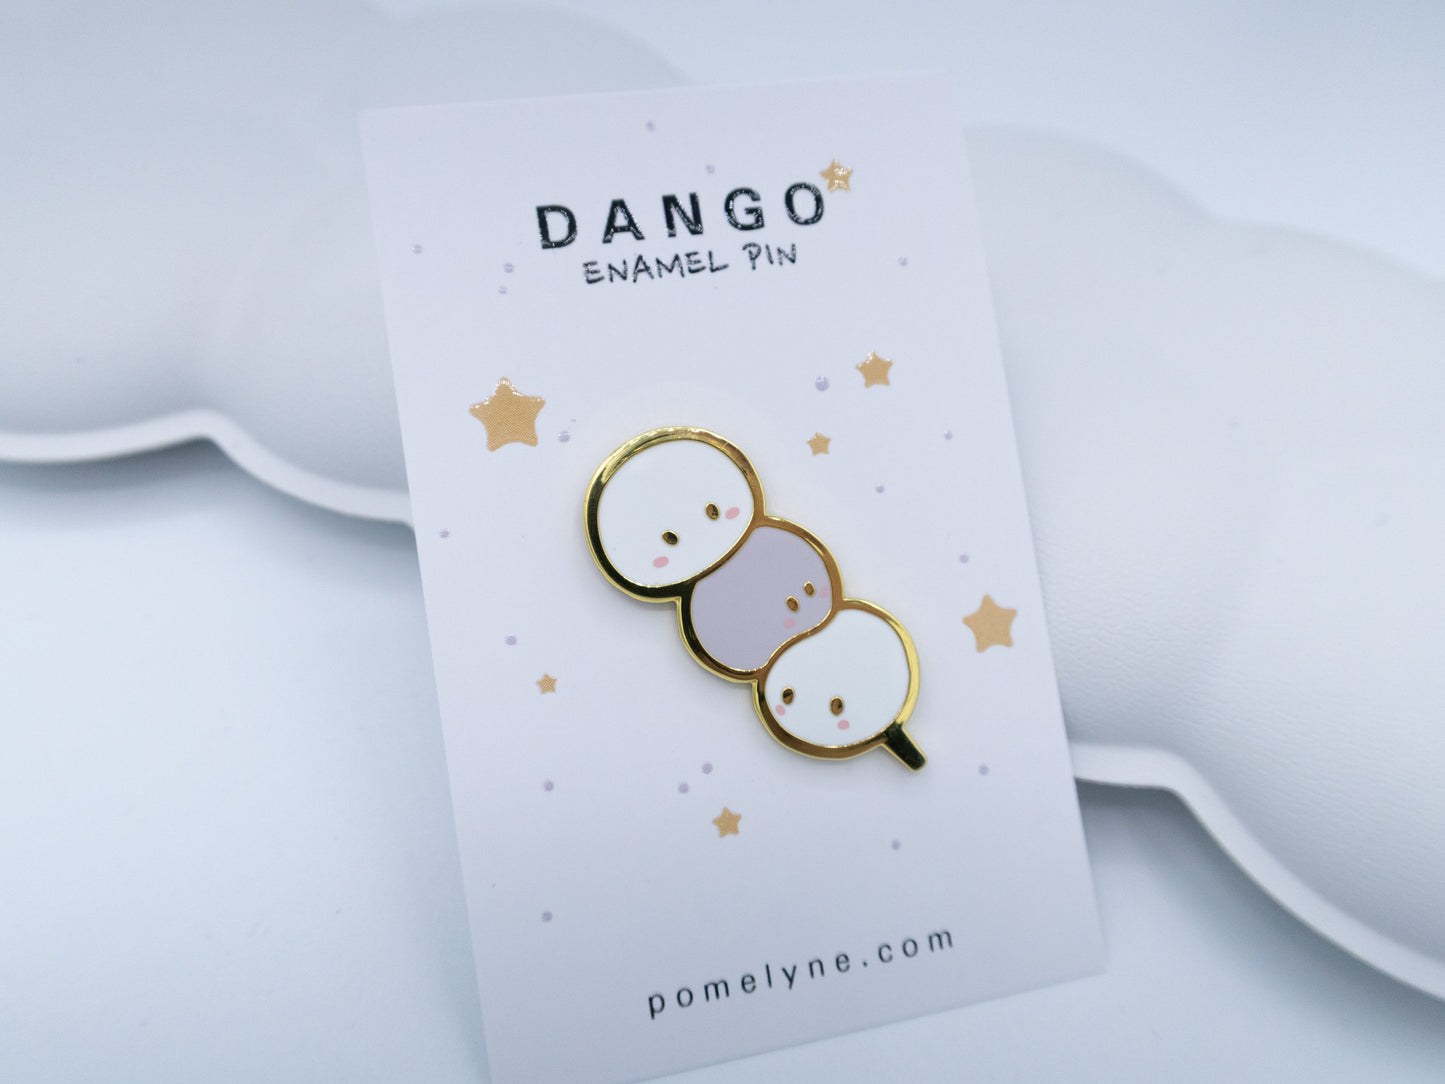 Pins "Dango"